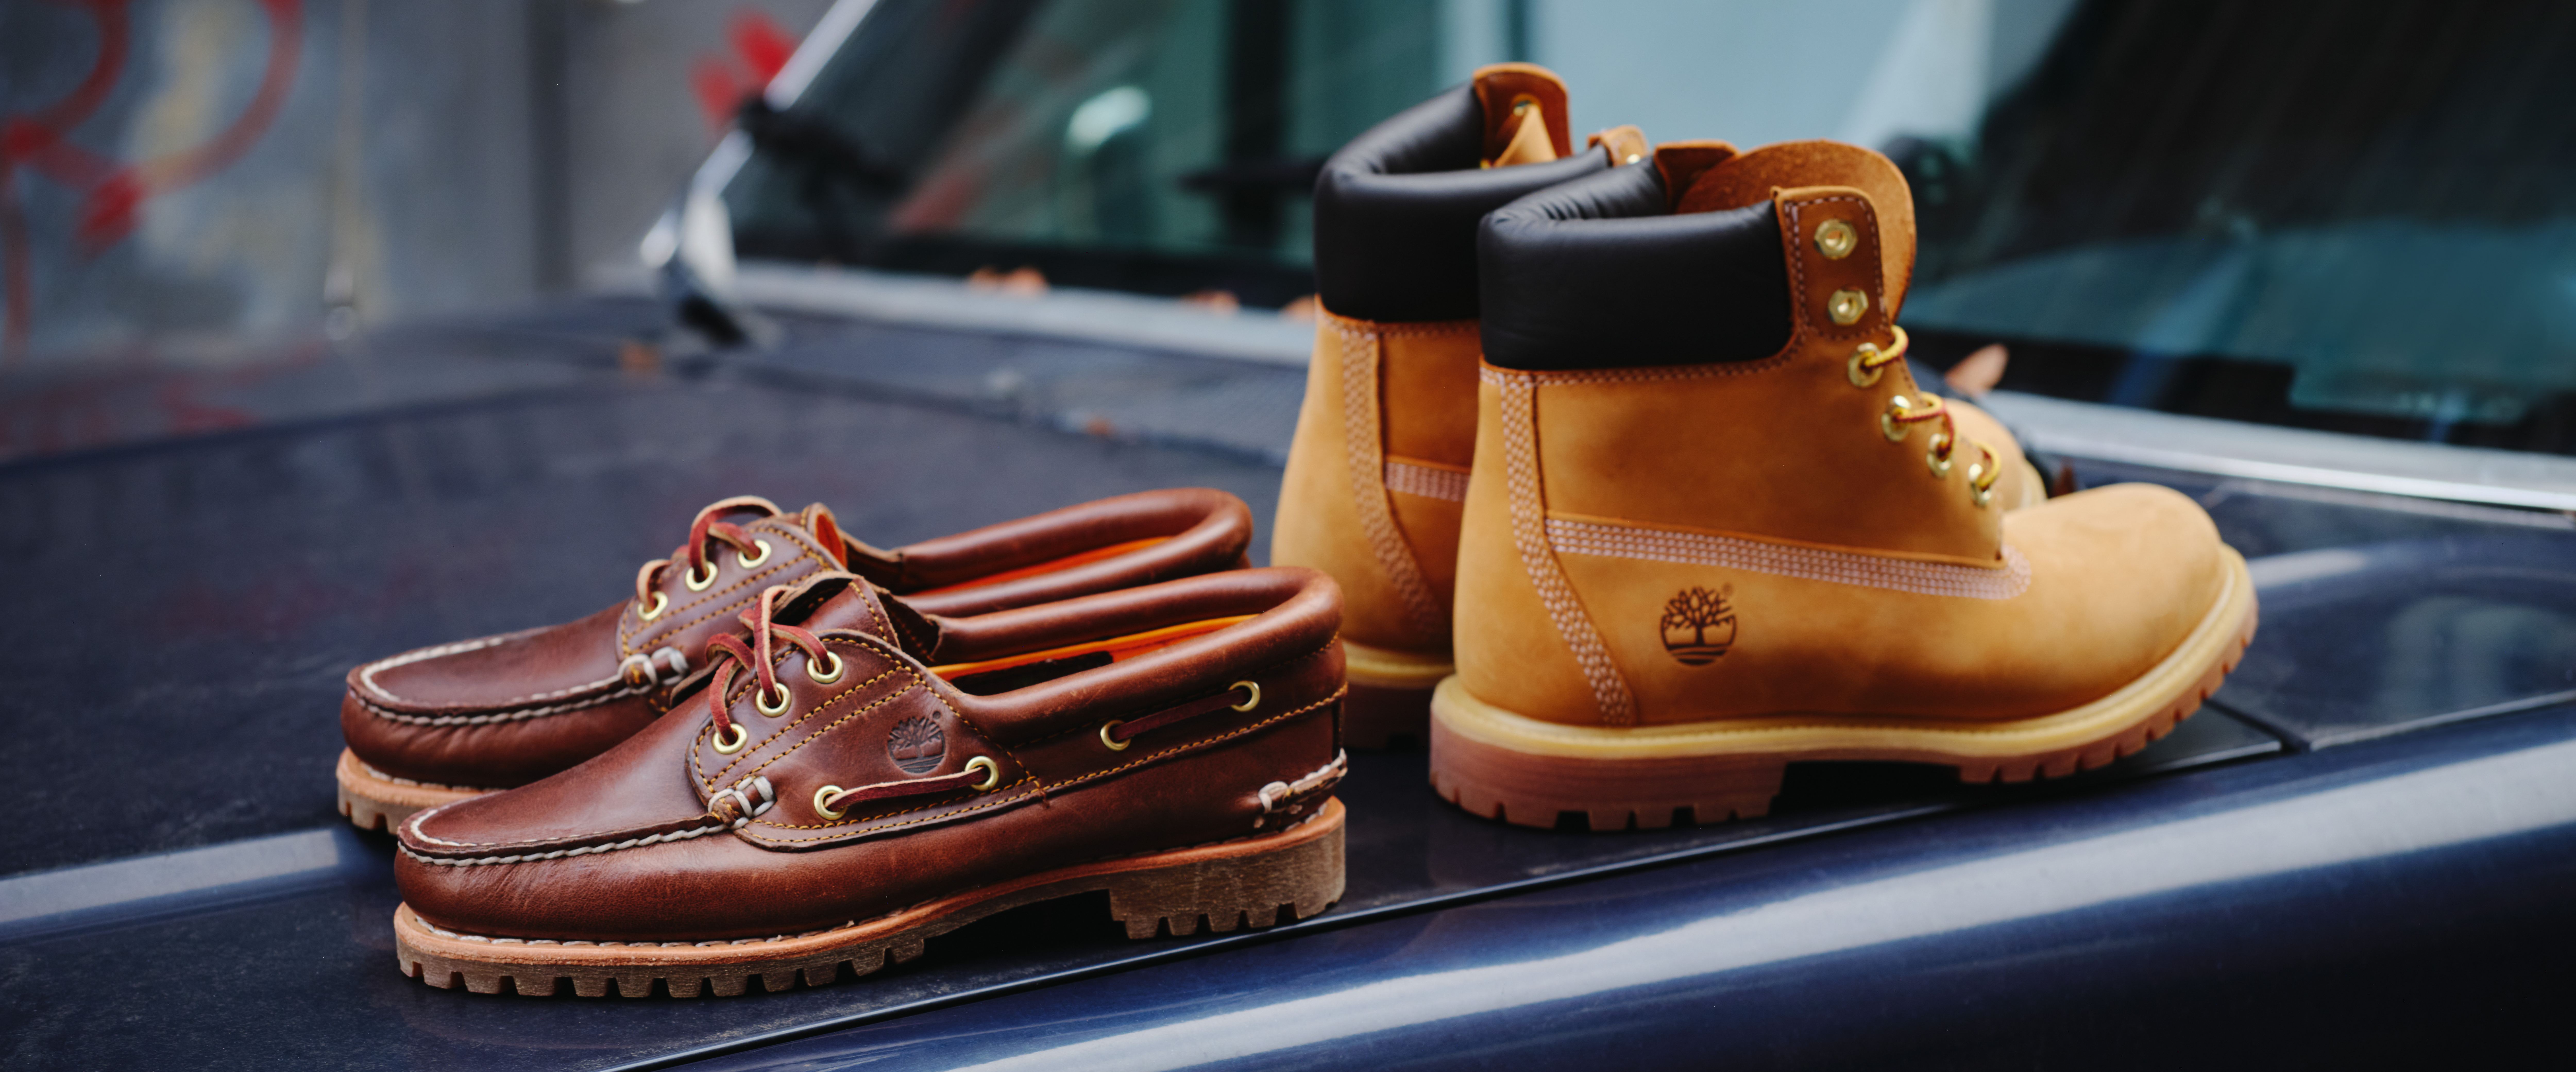 Les chaussures bateau crantée, robuste et confortable ont traversés les années et sont devenues des icones de la marques Timberland tout comme la Yellow Boot !